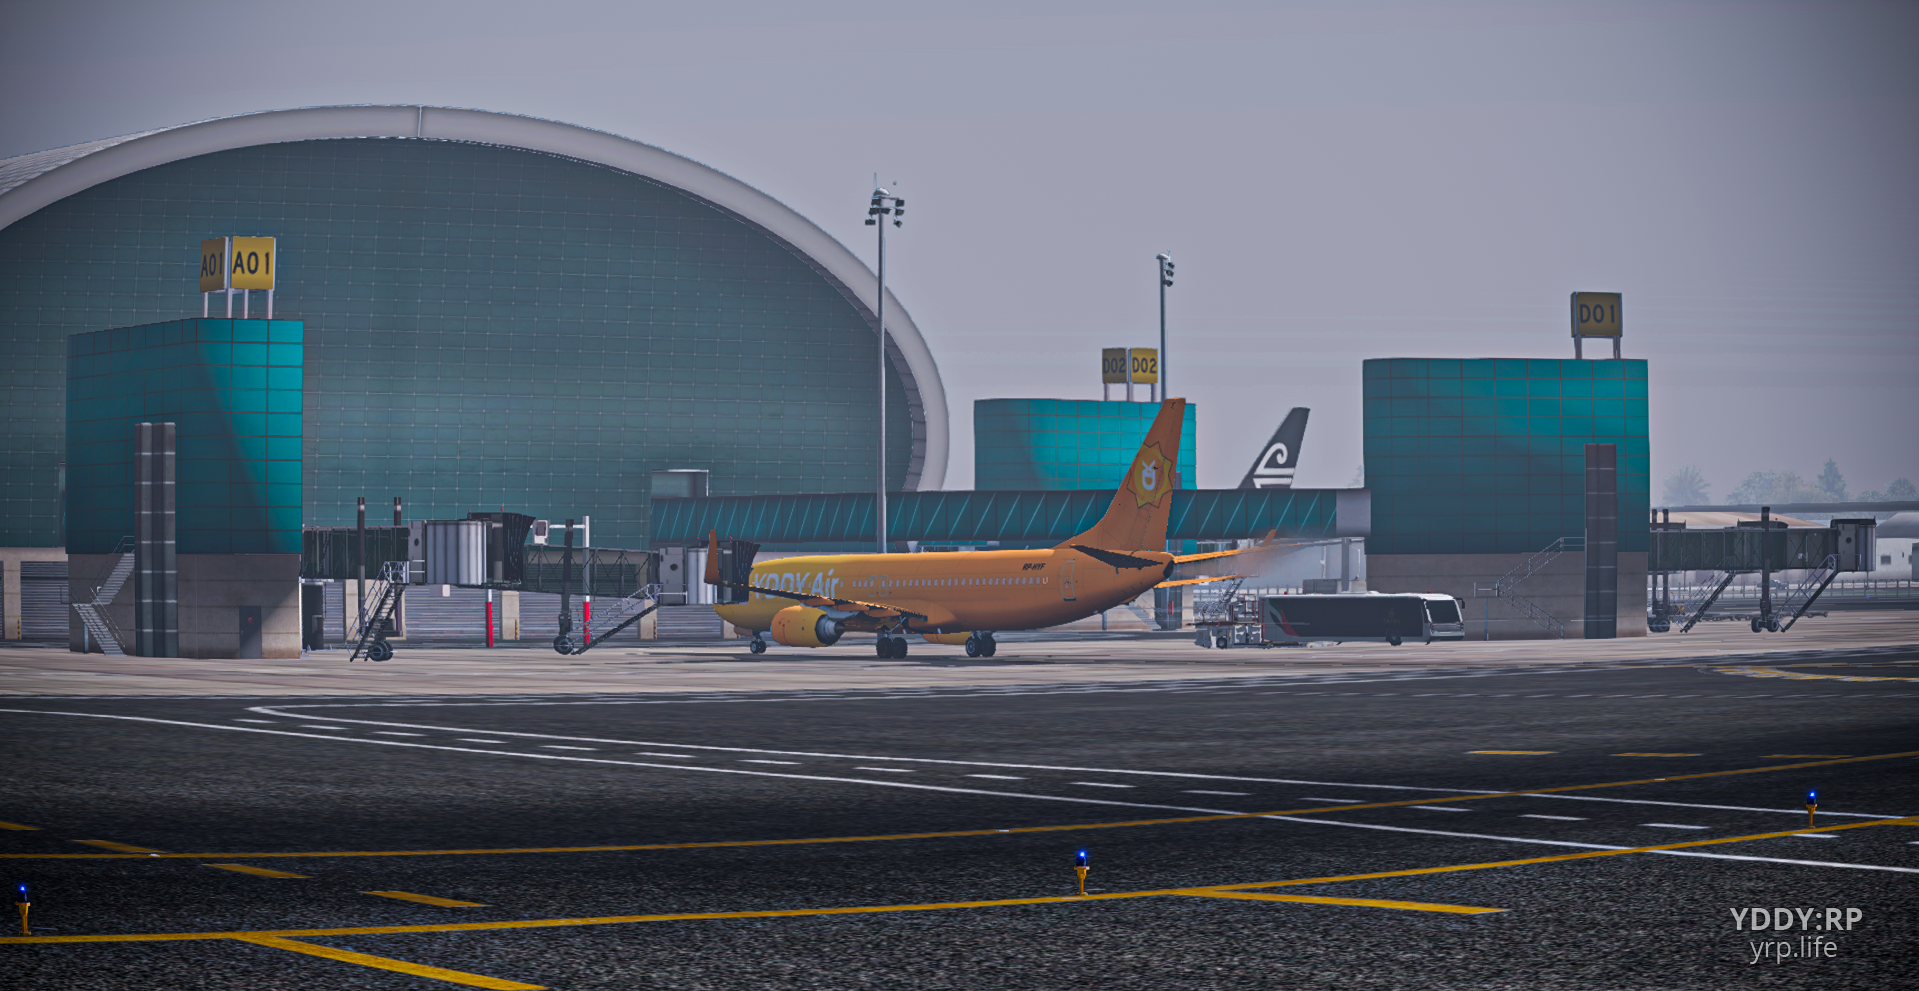 It's a Boeing 737 in Dubai!